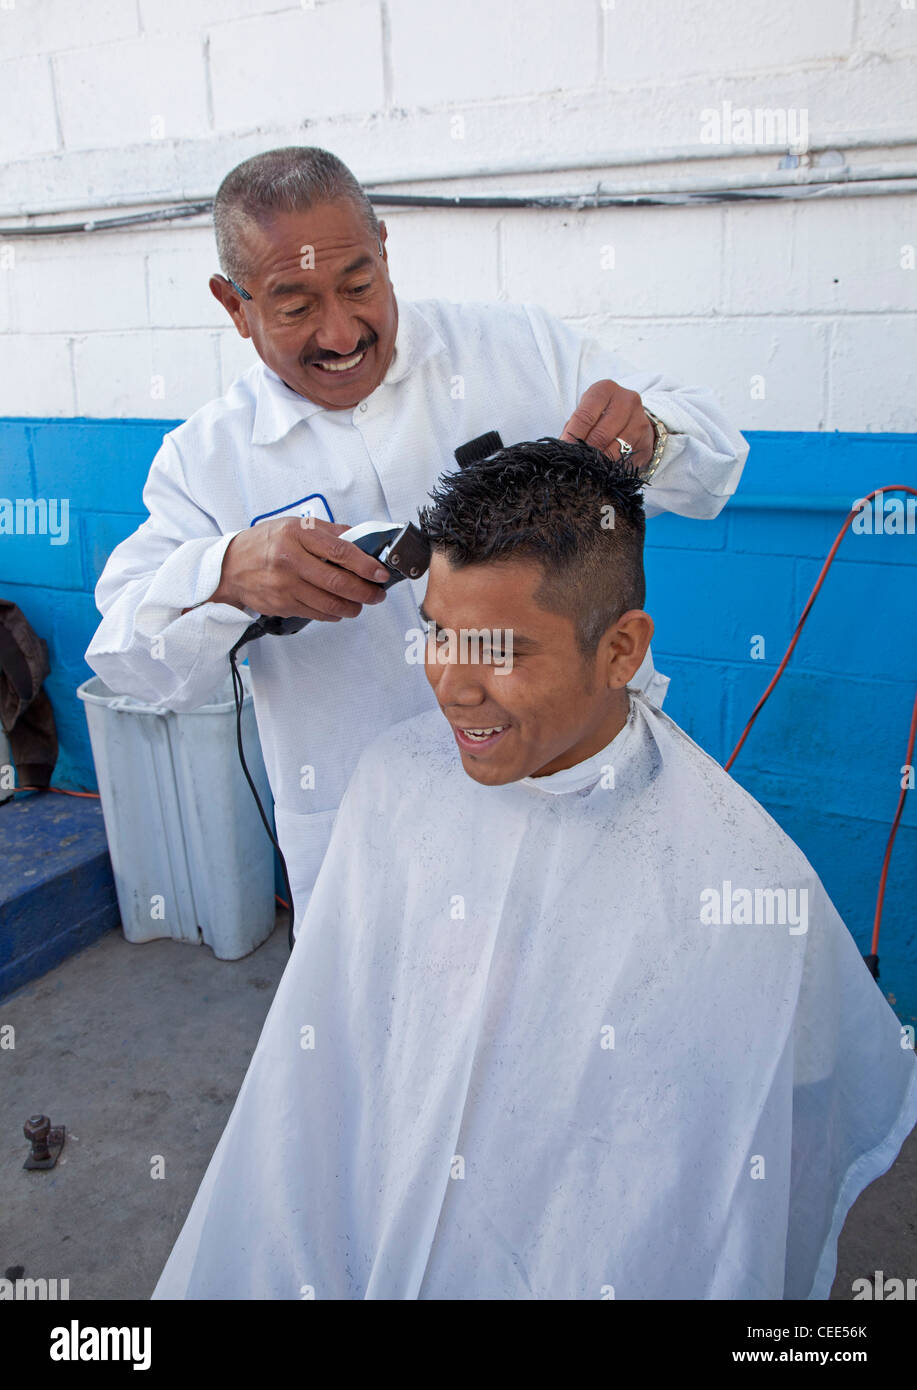 Friseur für anderen Deportierten aus USA schneidet Haare abgeschoben Stockfoto